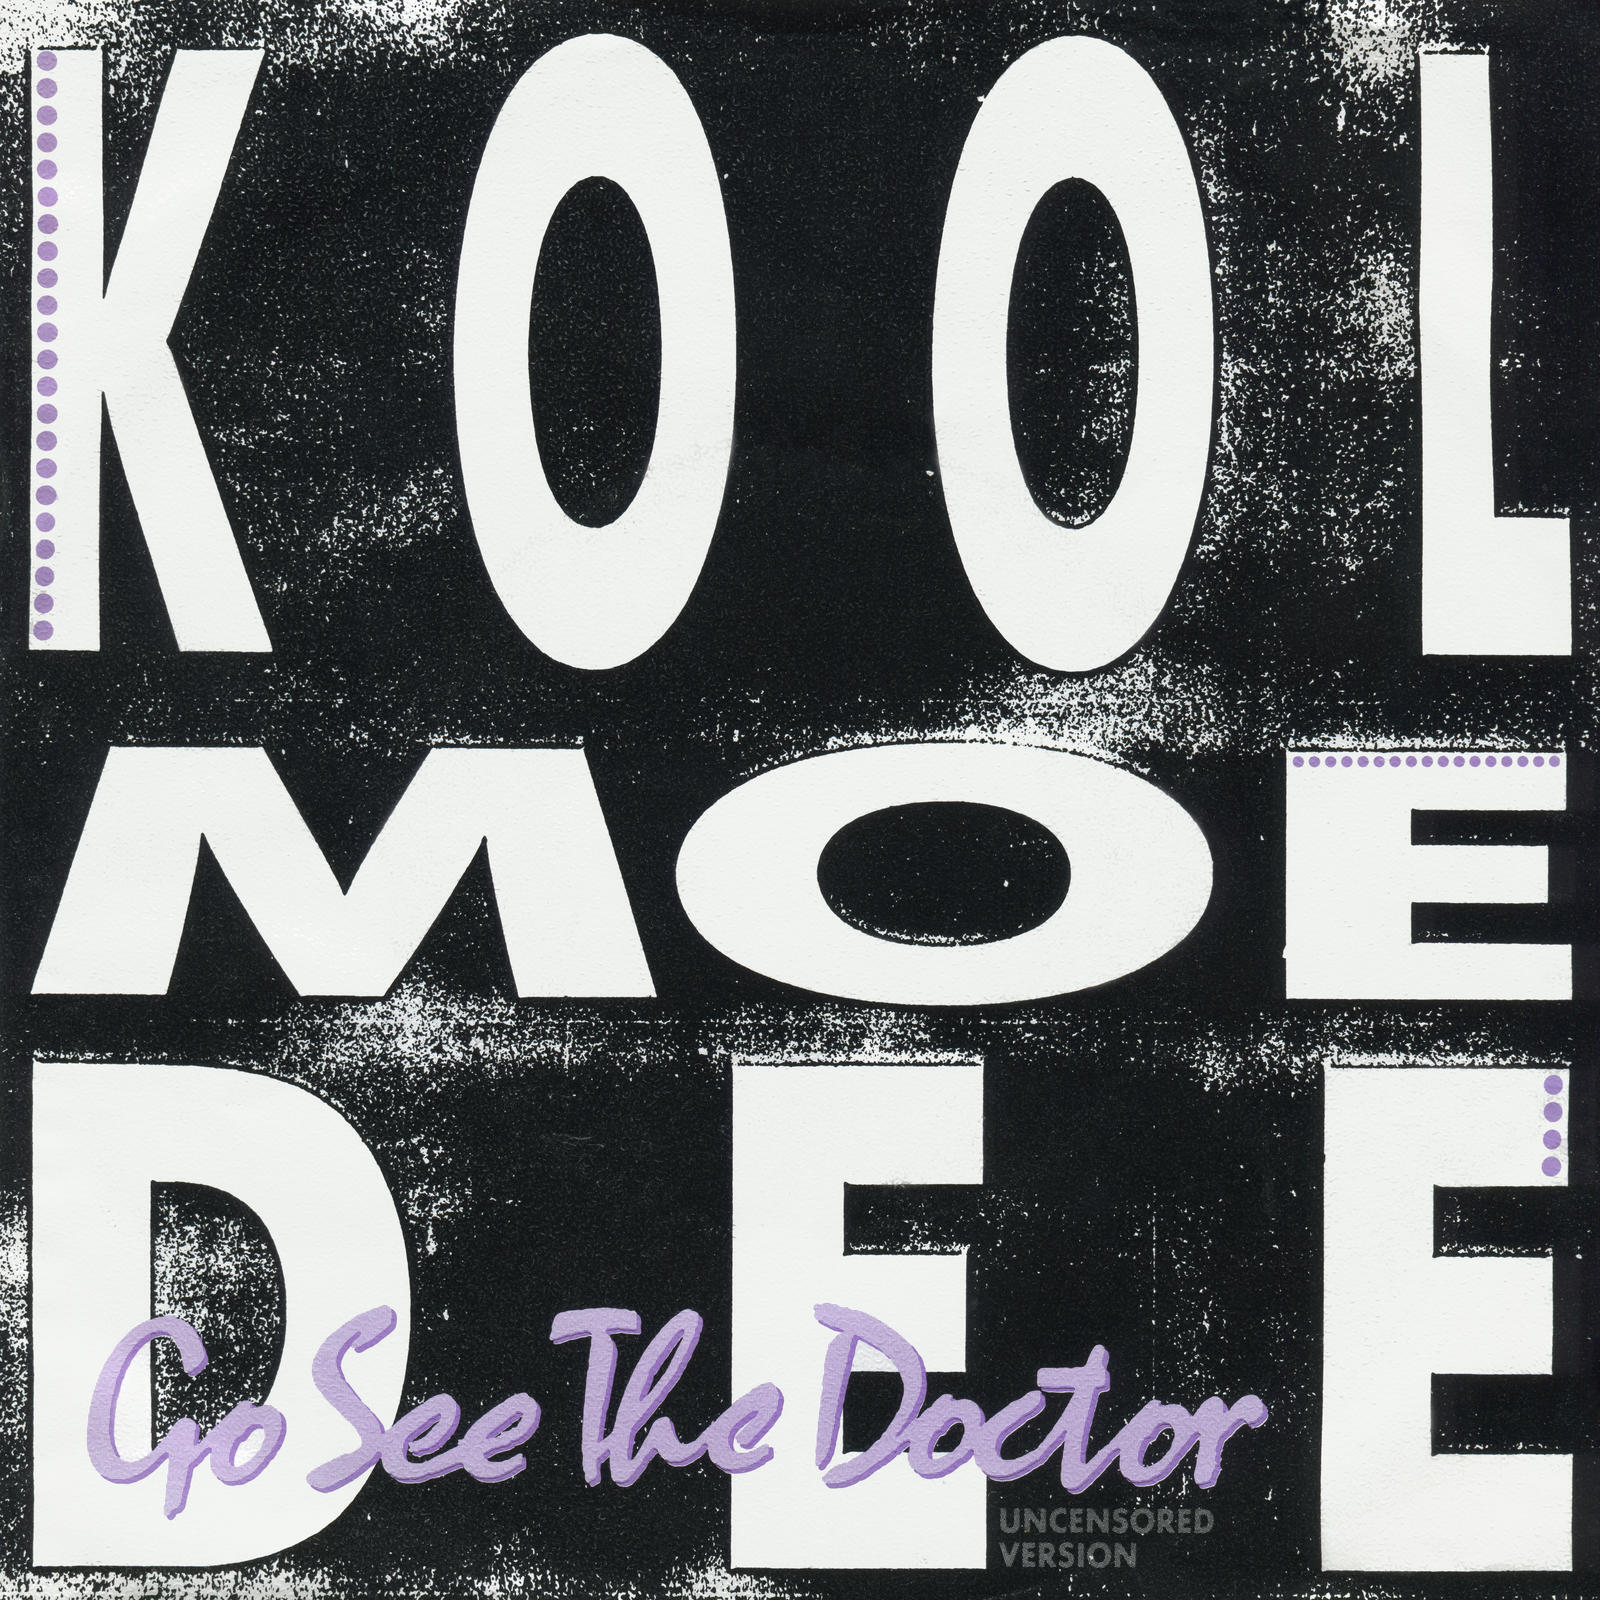 Kool Moe Dee - Go See The Doctor